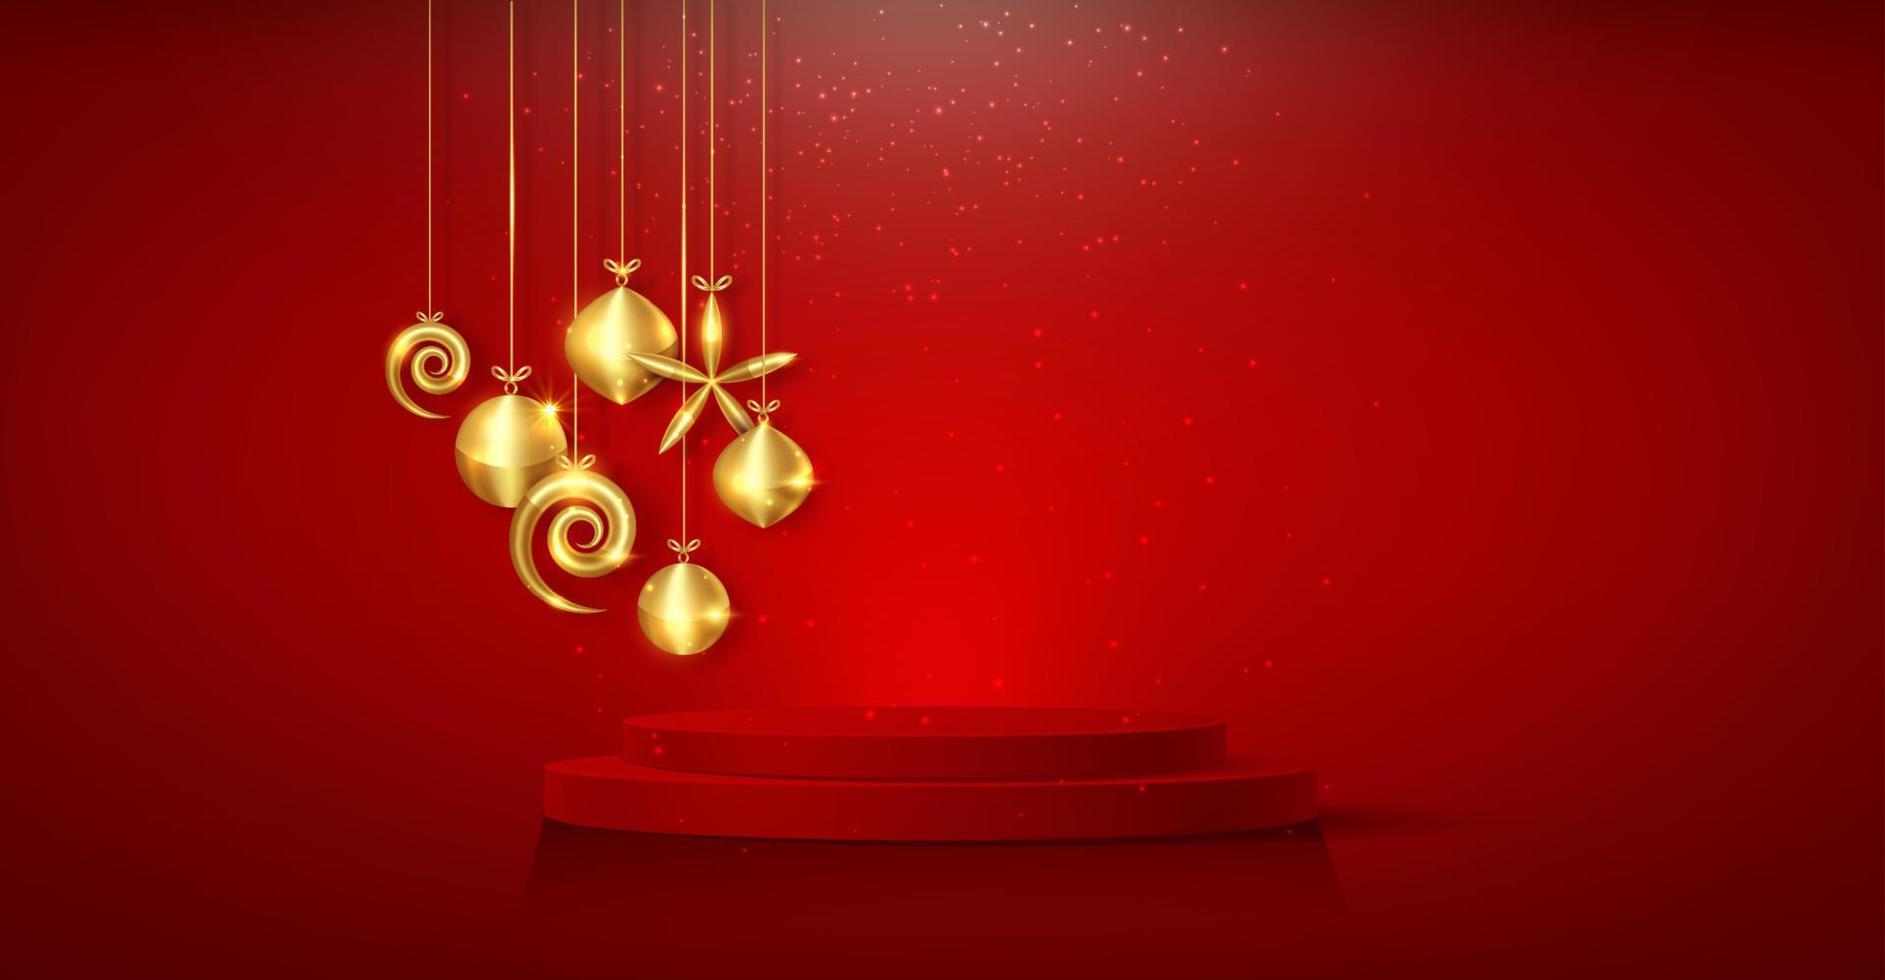 3D-Weihnachtspodium, Neujahrsparty, goldene Kugeln mit zylindrischer Form der Produktanzeige, goldene festliche Dekoration für die Feiertage. Luxus-Vorlage, Vektor isoliert auf rotem Hintergrund